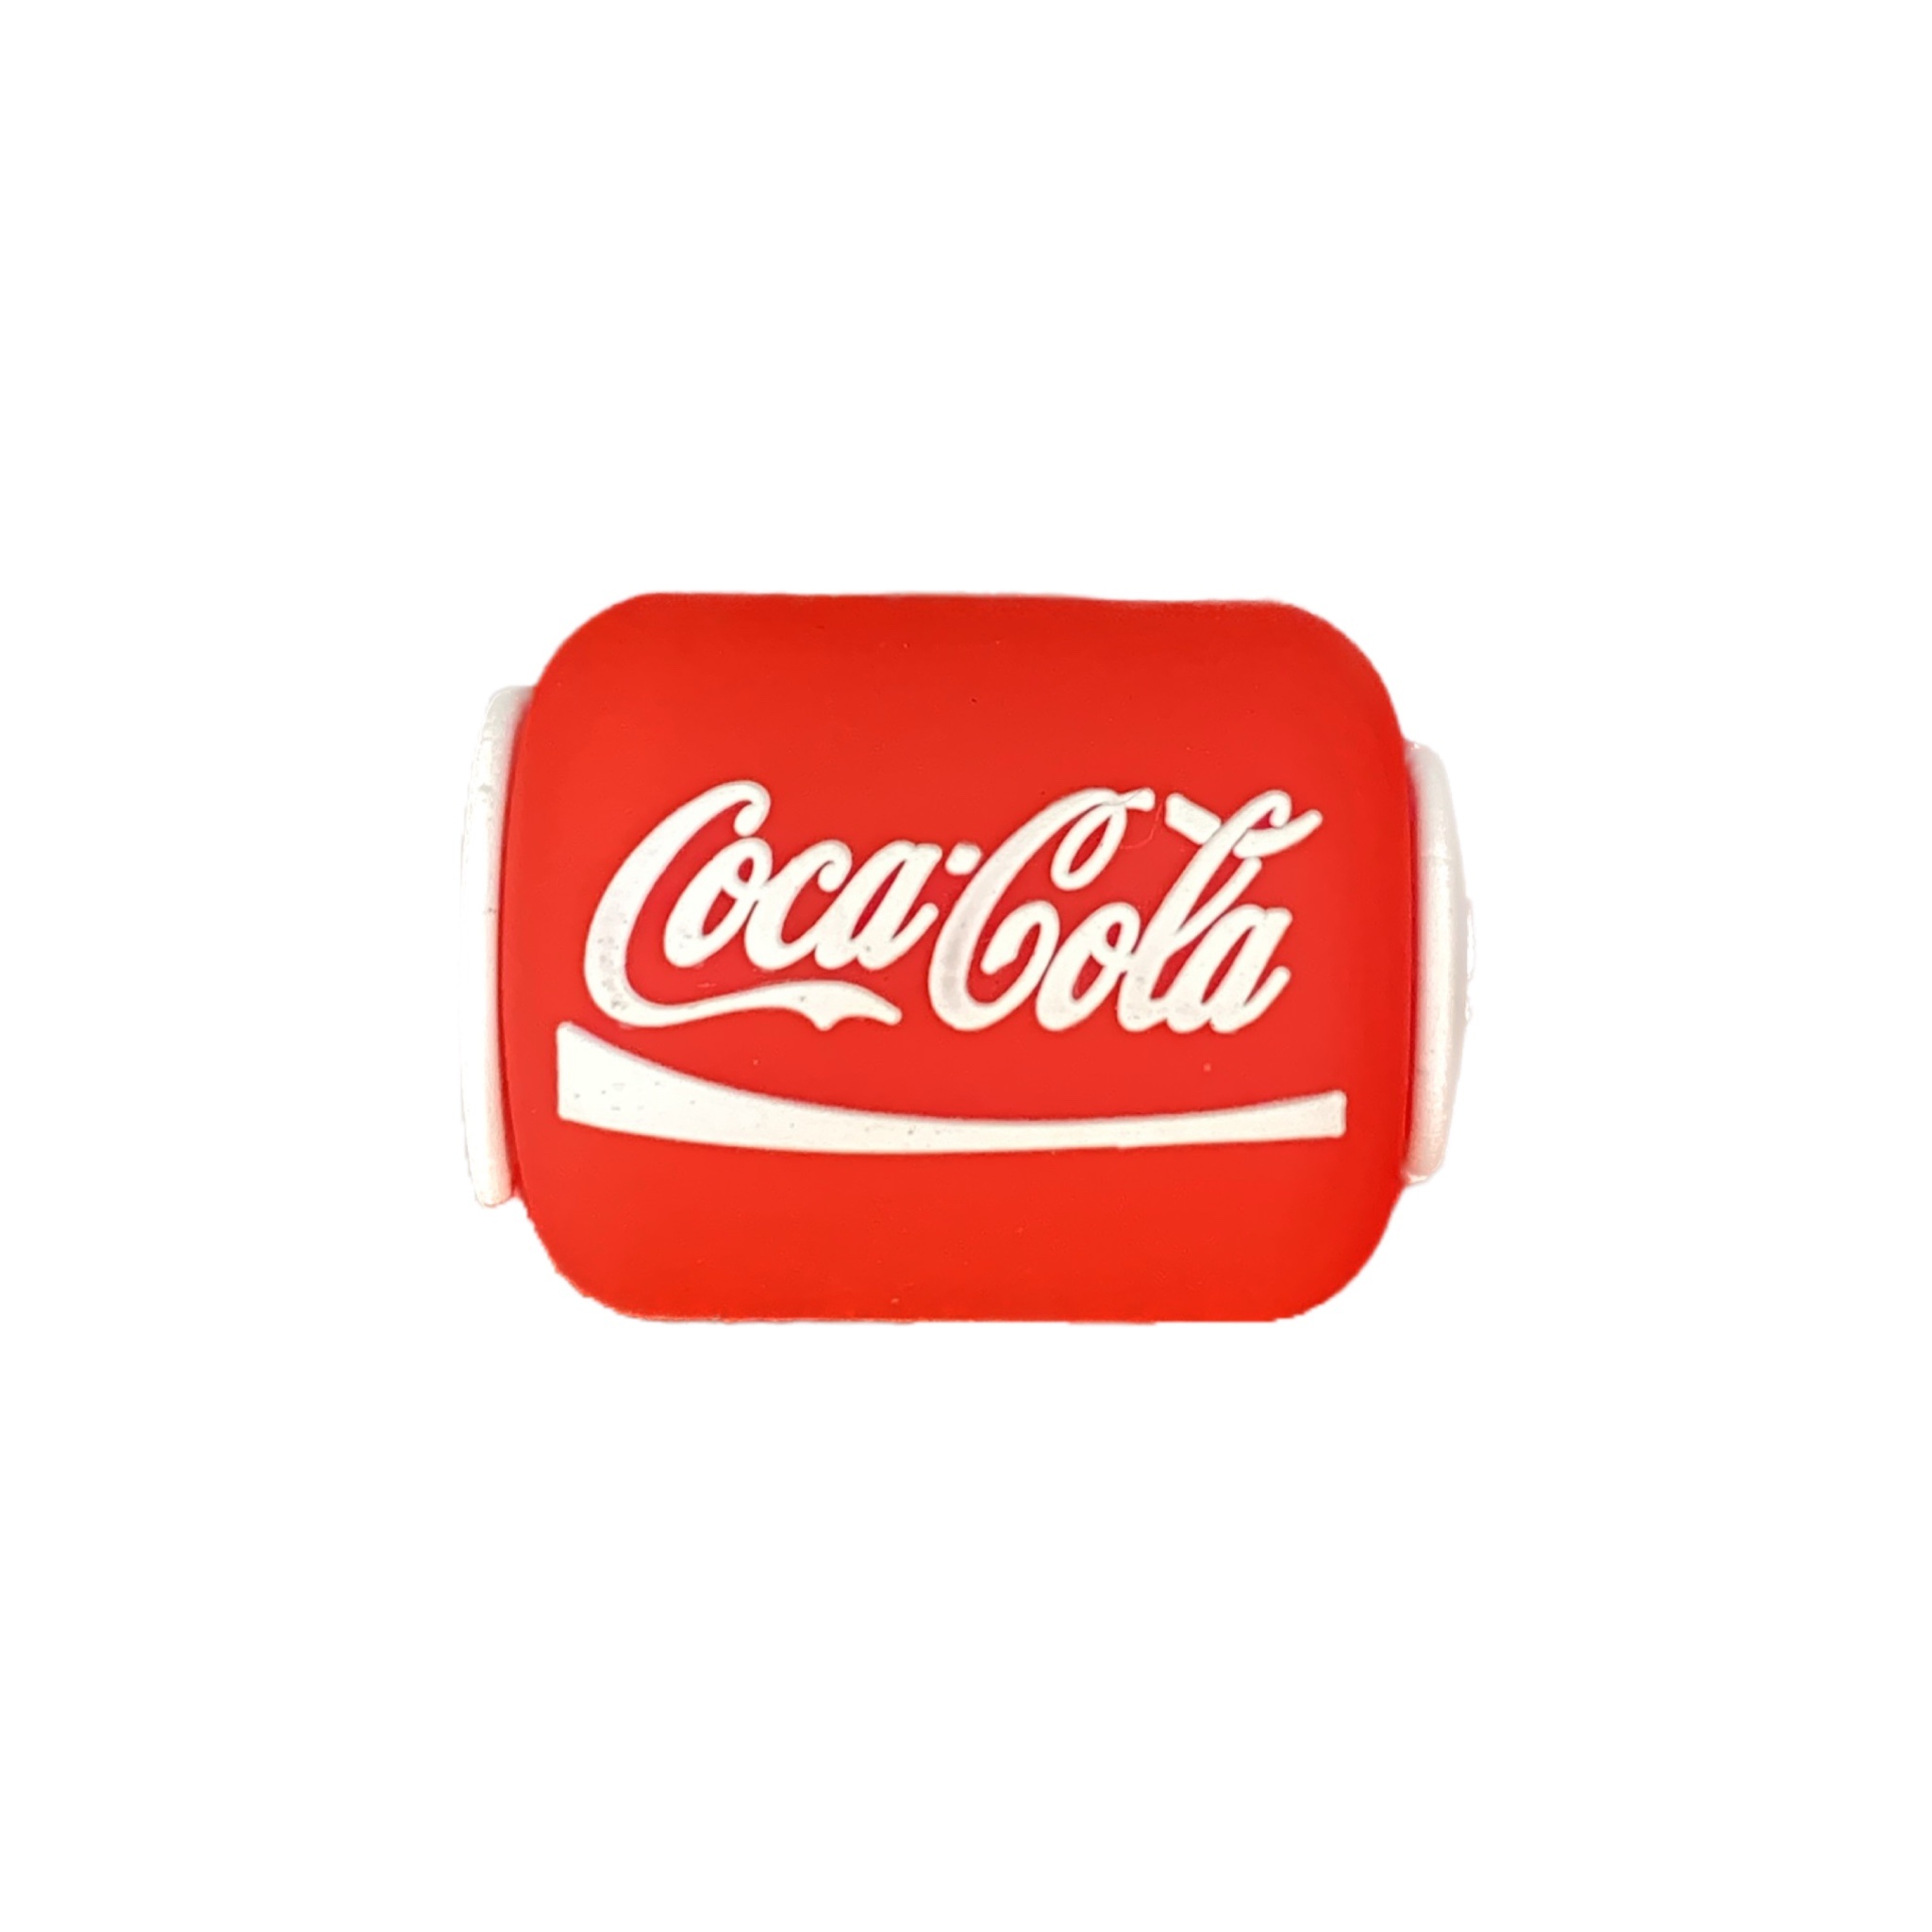 محافظ کابل کد 5134 طرح کوکا کولا